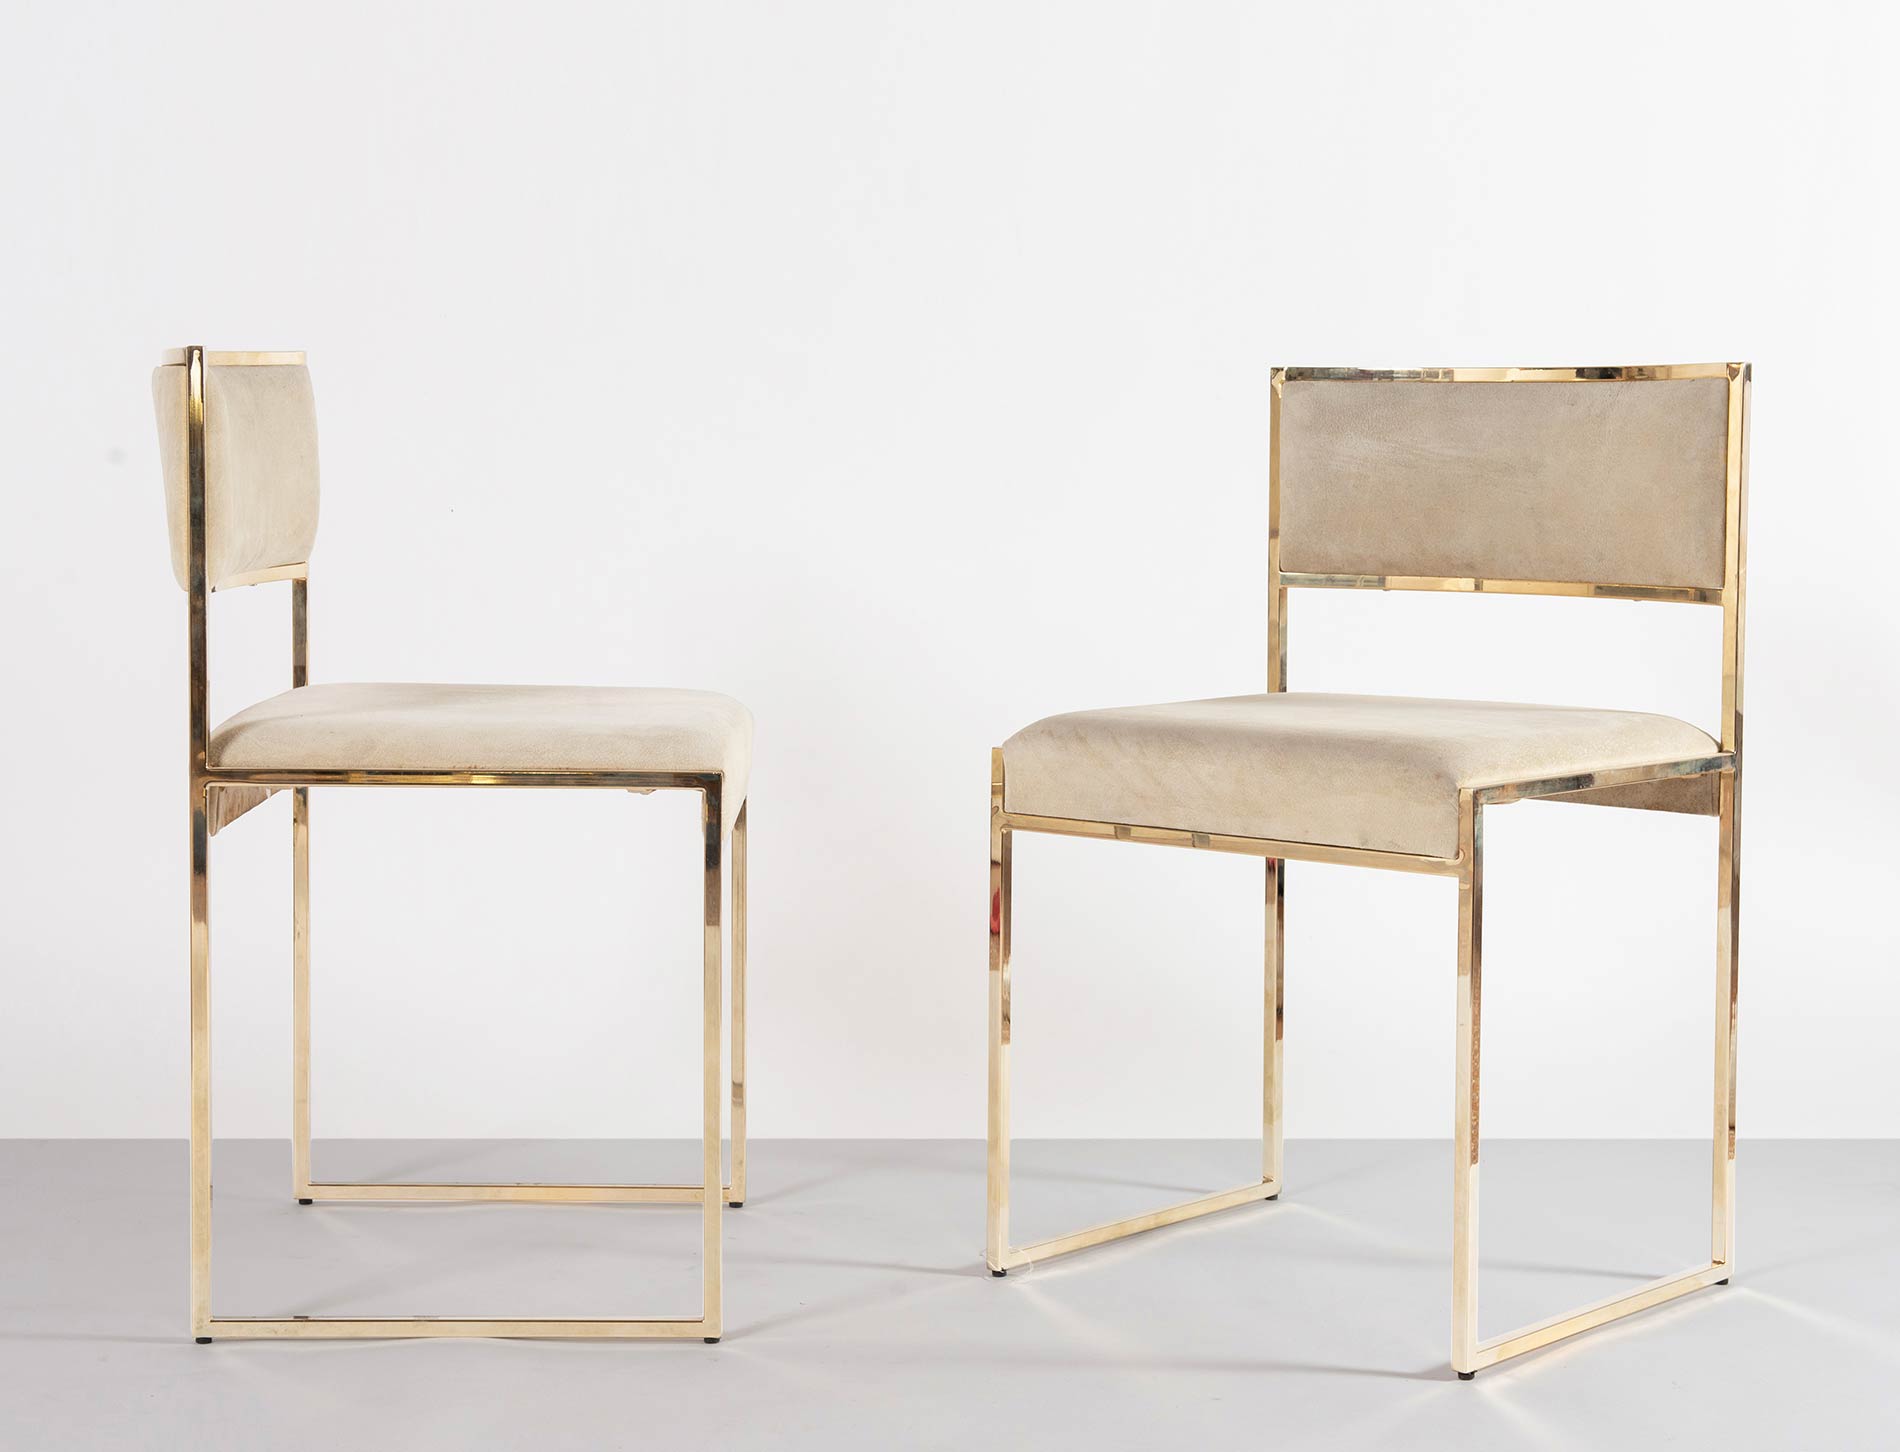 Romeo Rega, Due sedie con struttura in ottone, Anni ‘70.